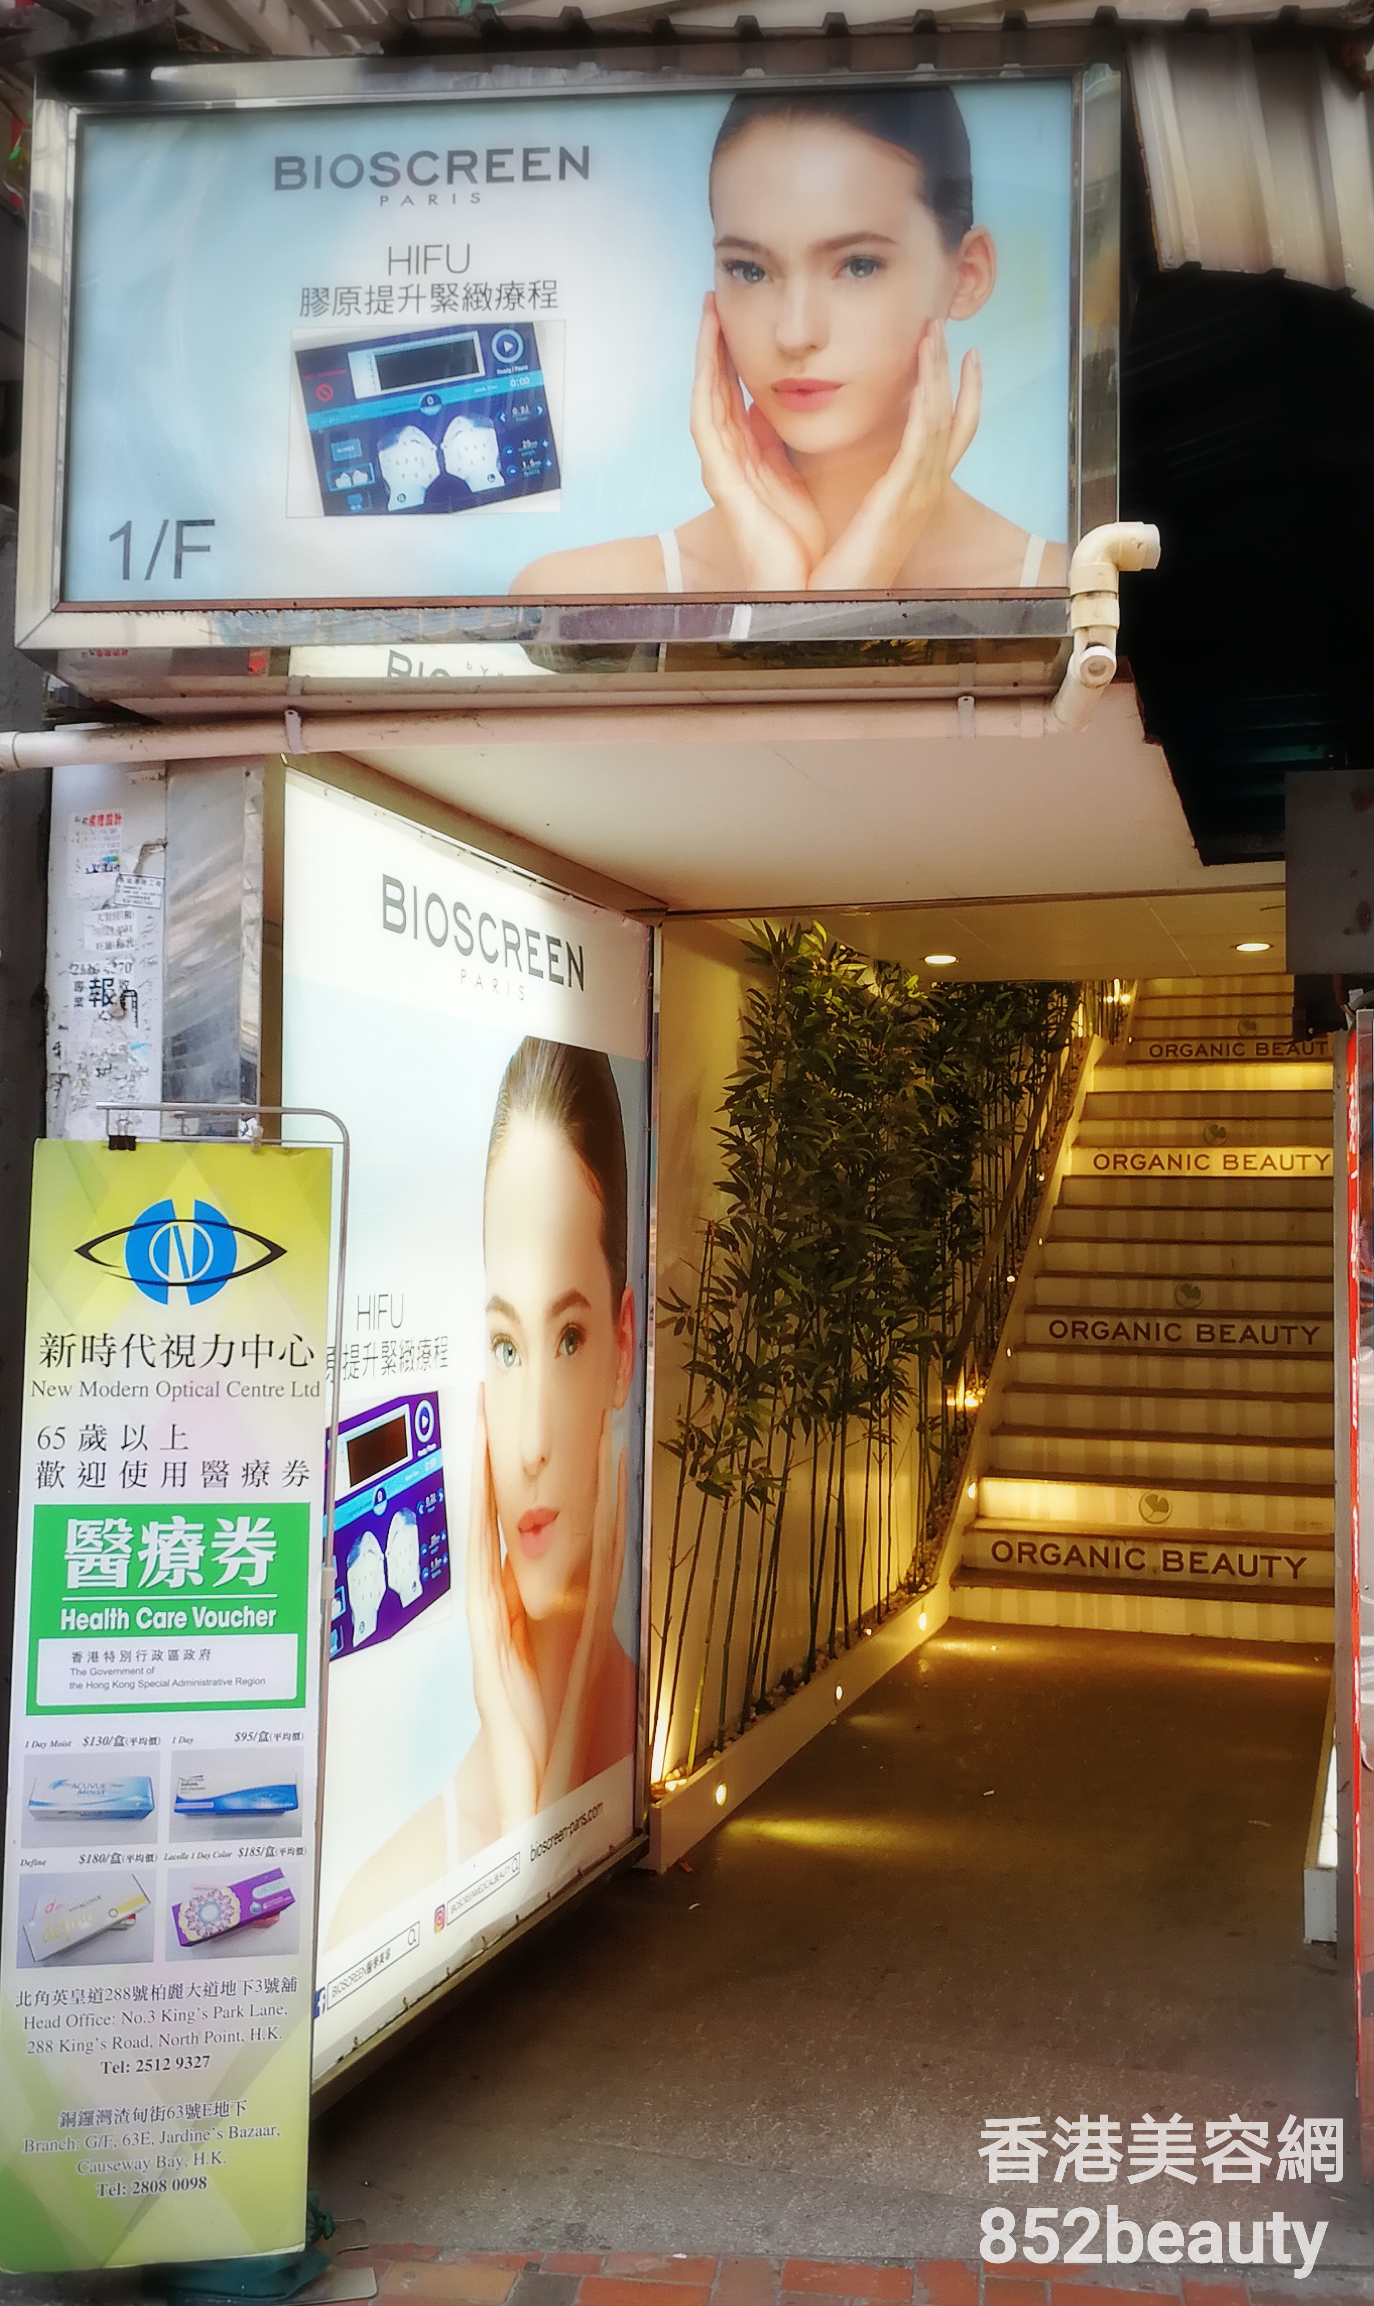 香港美容網 Hong Kong Beauty Salon 美容院 / 美容師: Bioscreen Organic Beauty (北角)